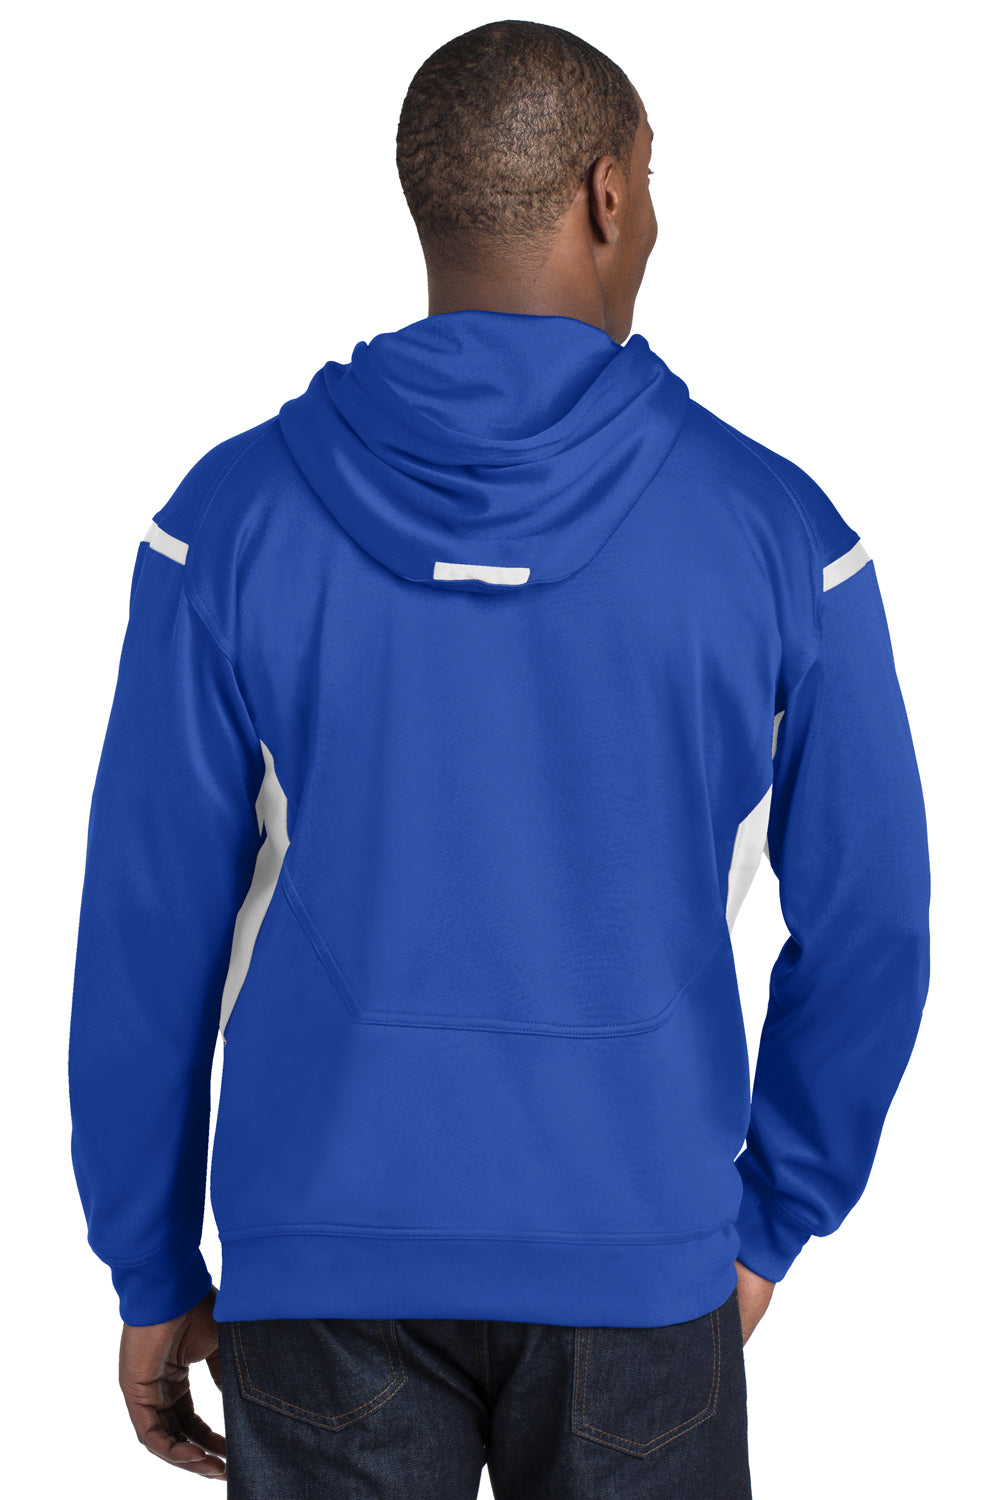 Sport-Tek F246 Mens Tech Moisture Wicking Fleece Hooded Sweatshirt Hoodie Royal Blue/White Back